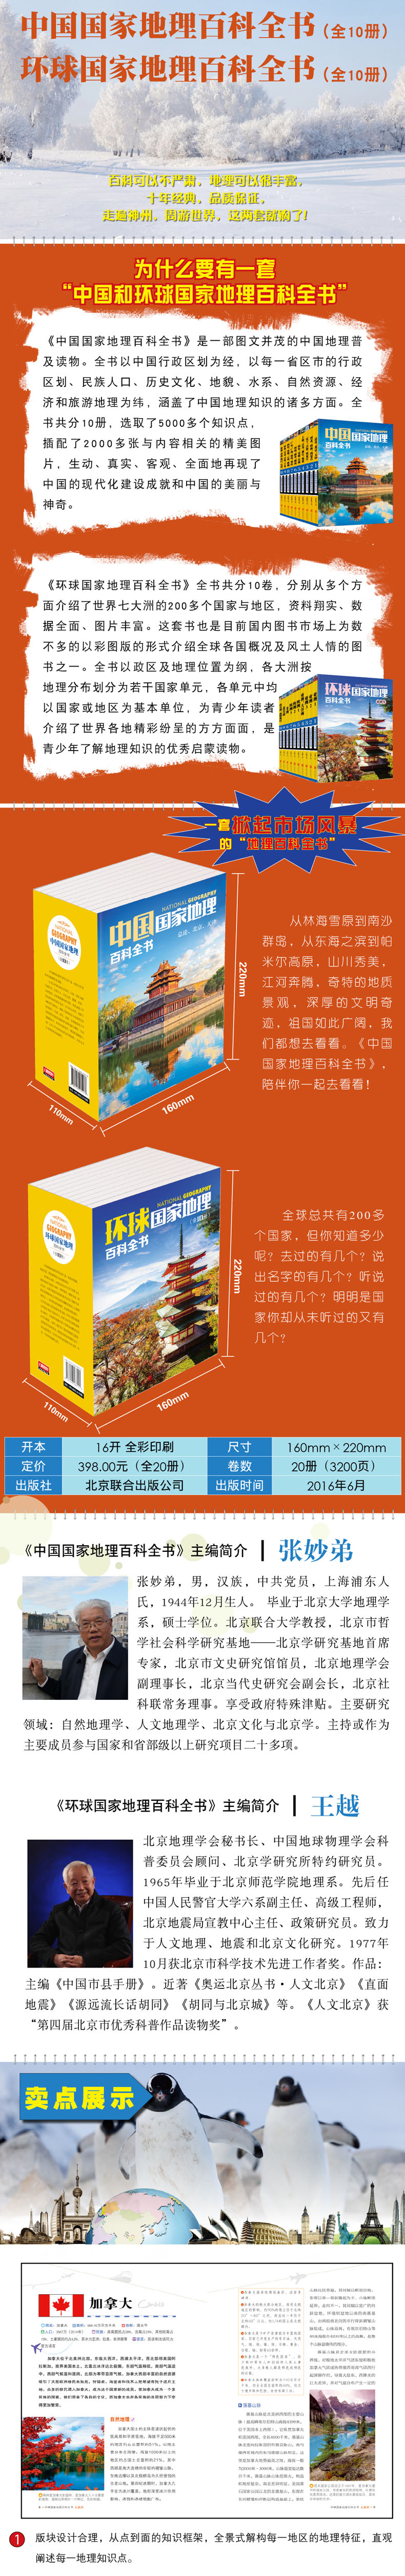 《环球国家地理百科全书》+《中国国家地理百科全书》套装共20册 图1